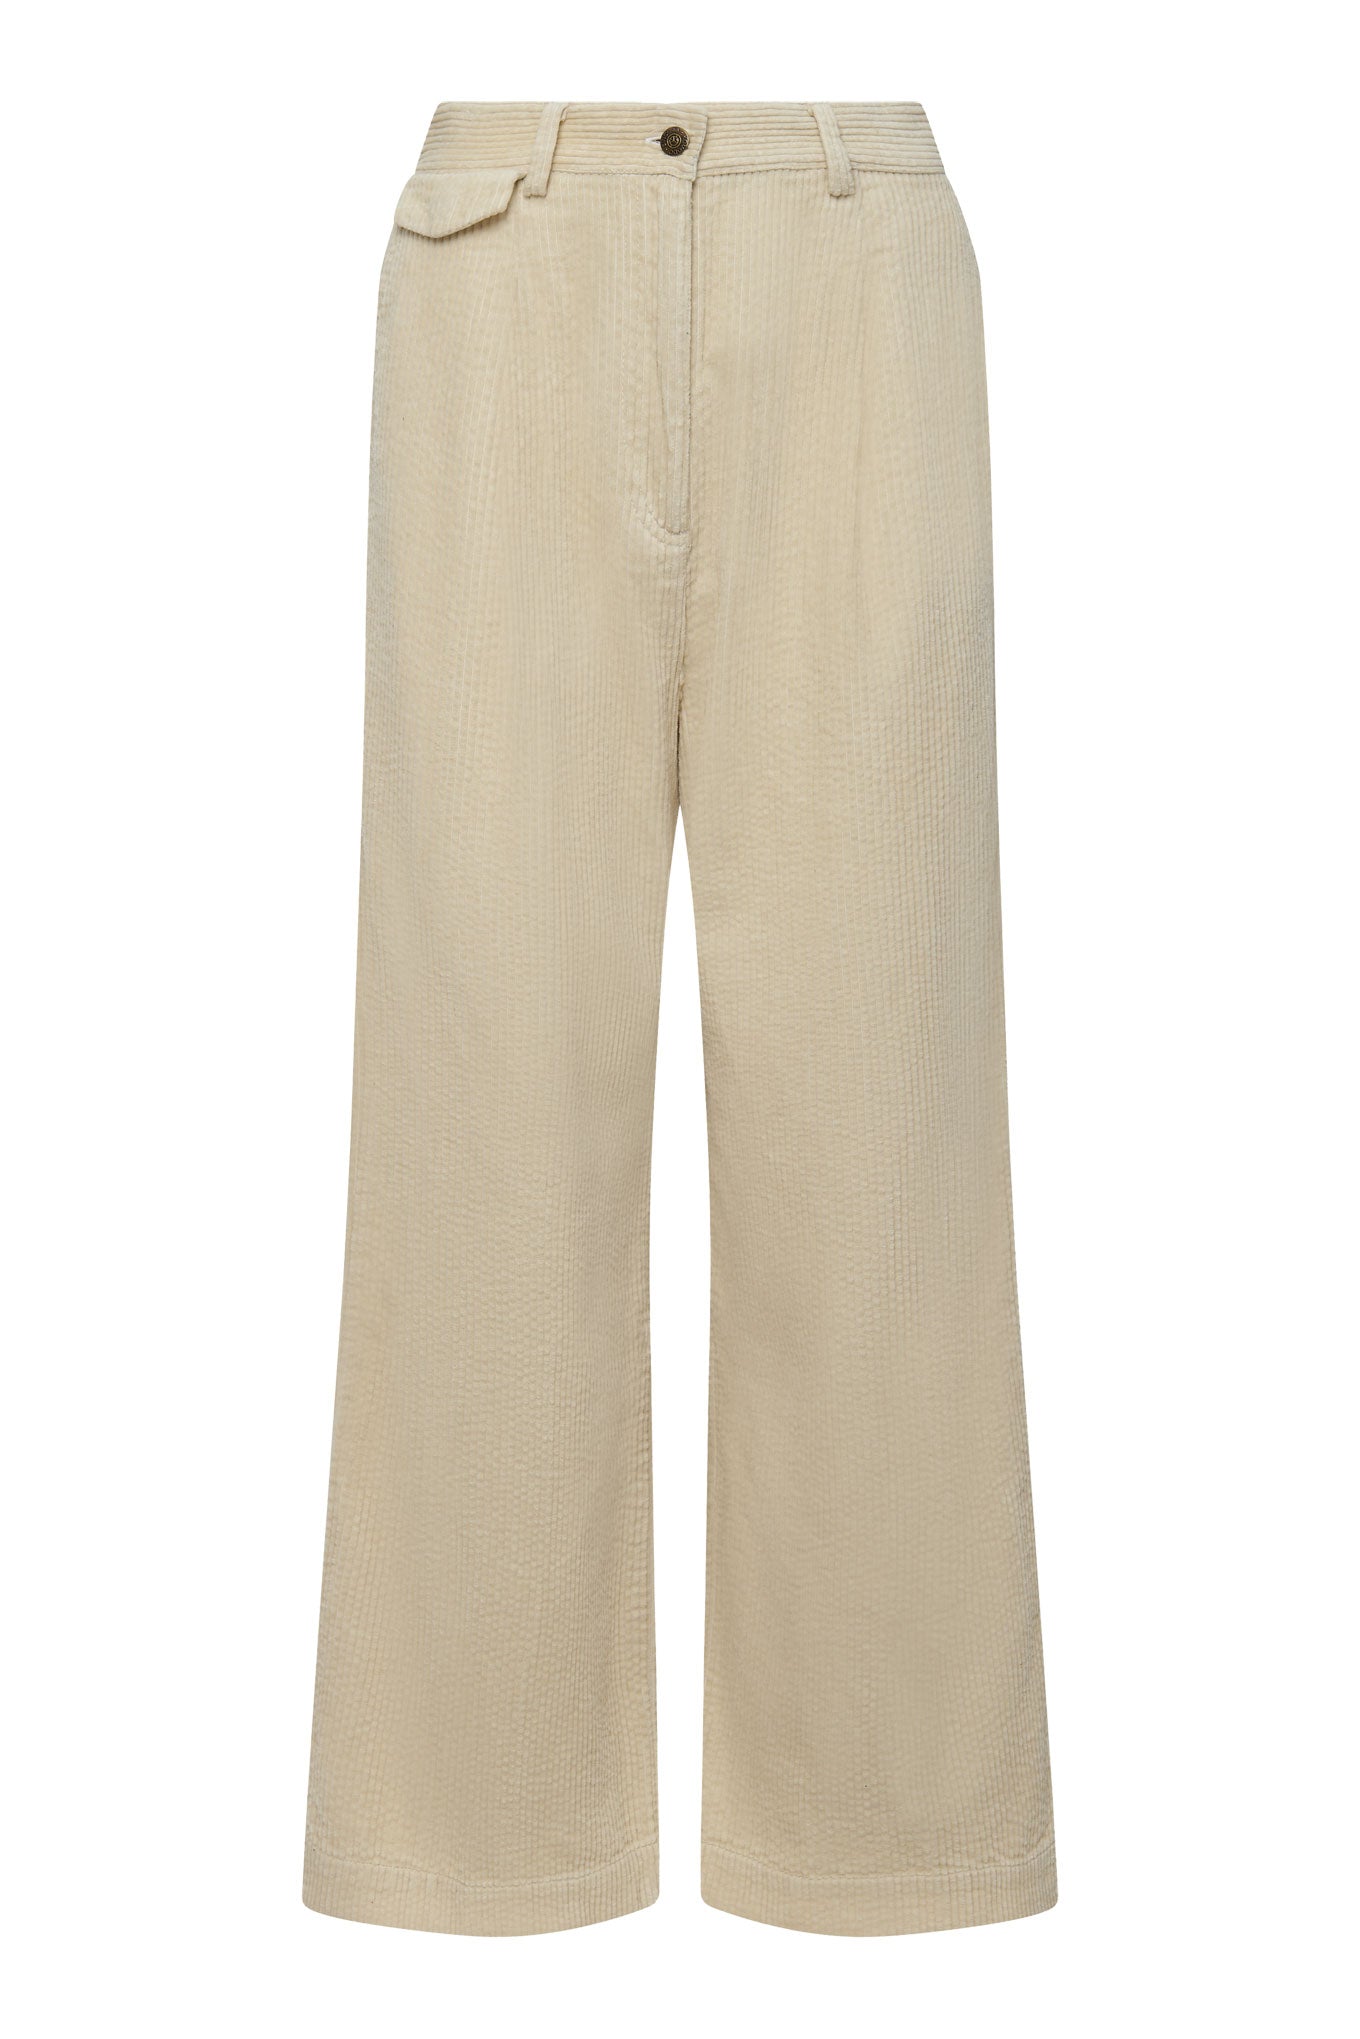 Pantalon large en velours côtelé marron clair TIGER en coton biologique de Komodo